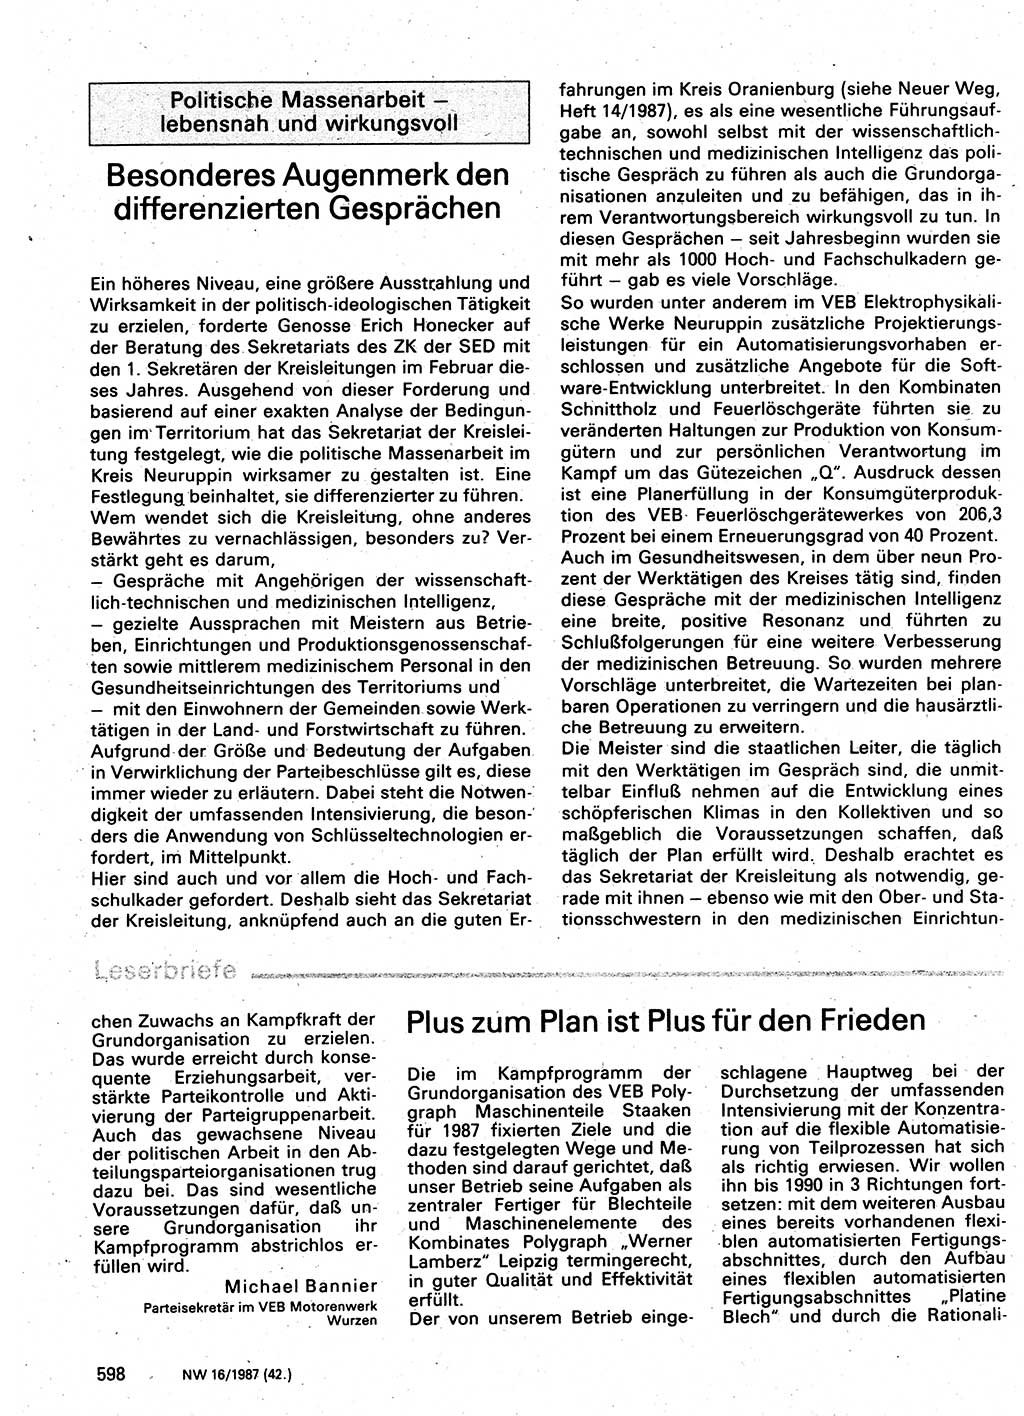 Neuer Weg (NW), Organ des Zentralkomitees (ZK) der SED (Sozialistische Einheitspartei Deutschlands) für Fragen des Parteilebens, 42. Jahrgang [Deutsche Demokratische Republik (DDR)] 1987, Seite 598 (NW ZK SED DDR 1987, S. 598)